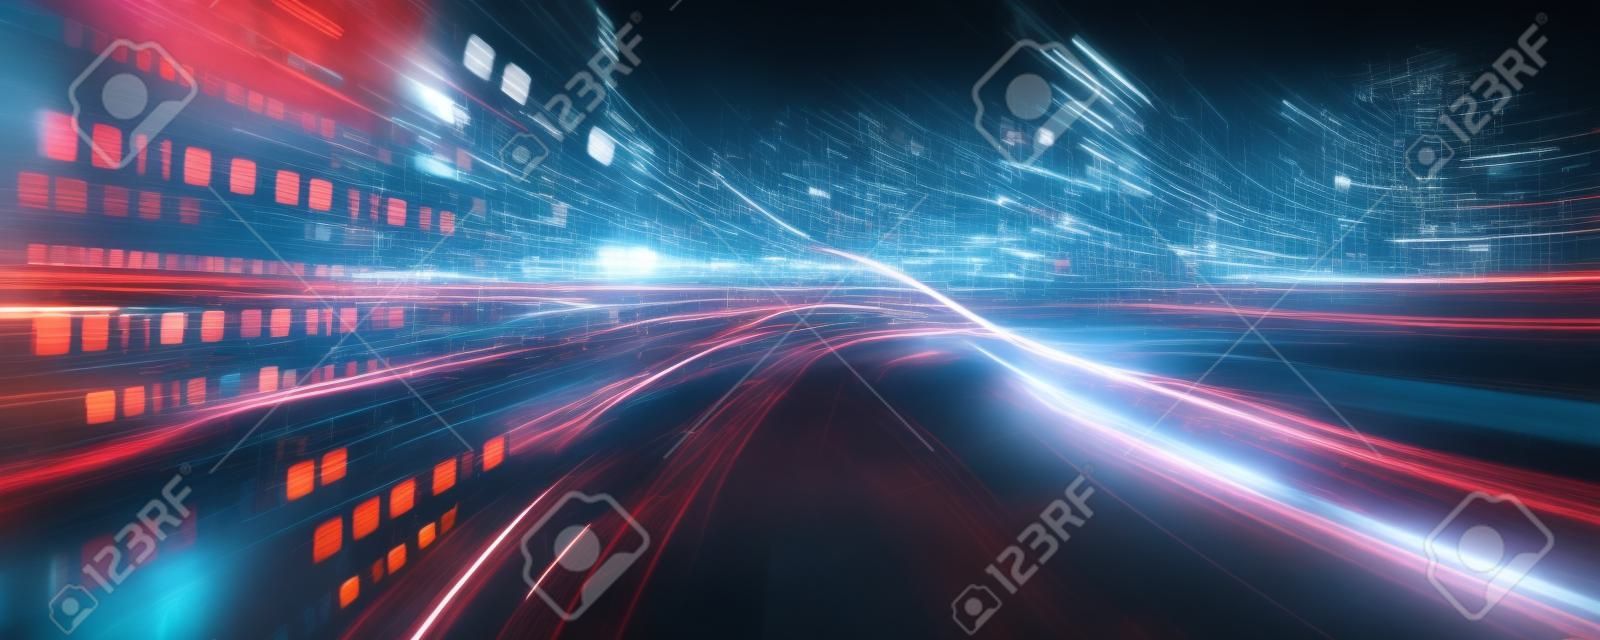 Flux de données numériques sur route avec flou de mouvement pour créer une vision de transfert de vitesse rapide. Concept de transformation numérique future , innovation perturbatrice et méthodologie d'entreprise agile .